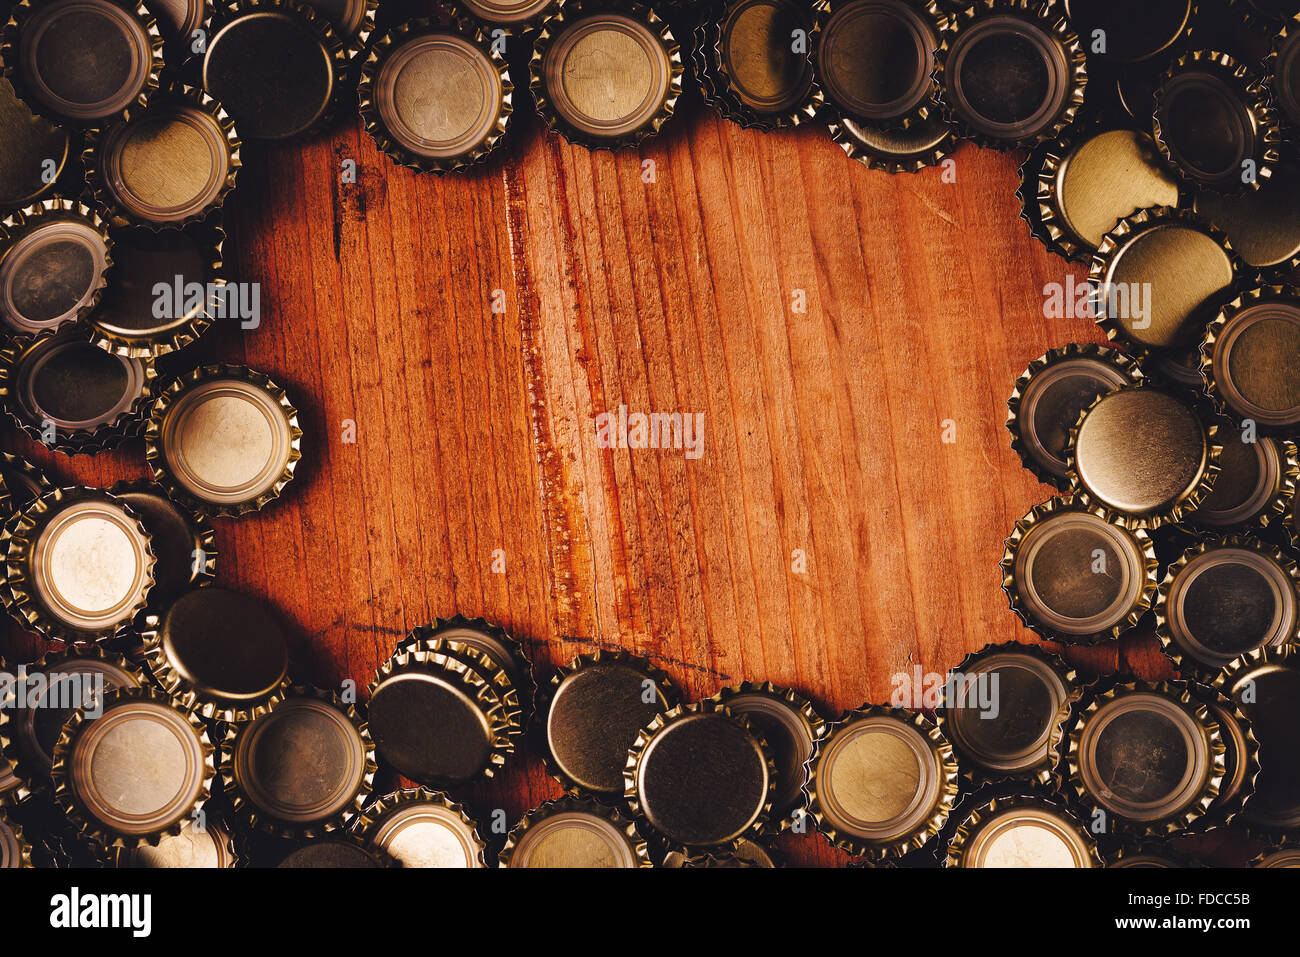 Bier-Kronkorken Frame über Eiche Holzbohle als textfreiraum bilden. Stockfoto